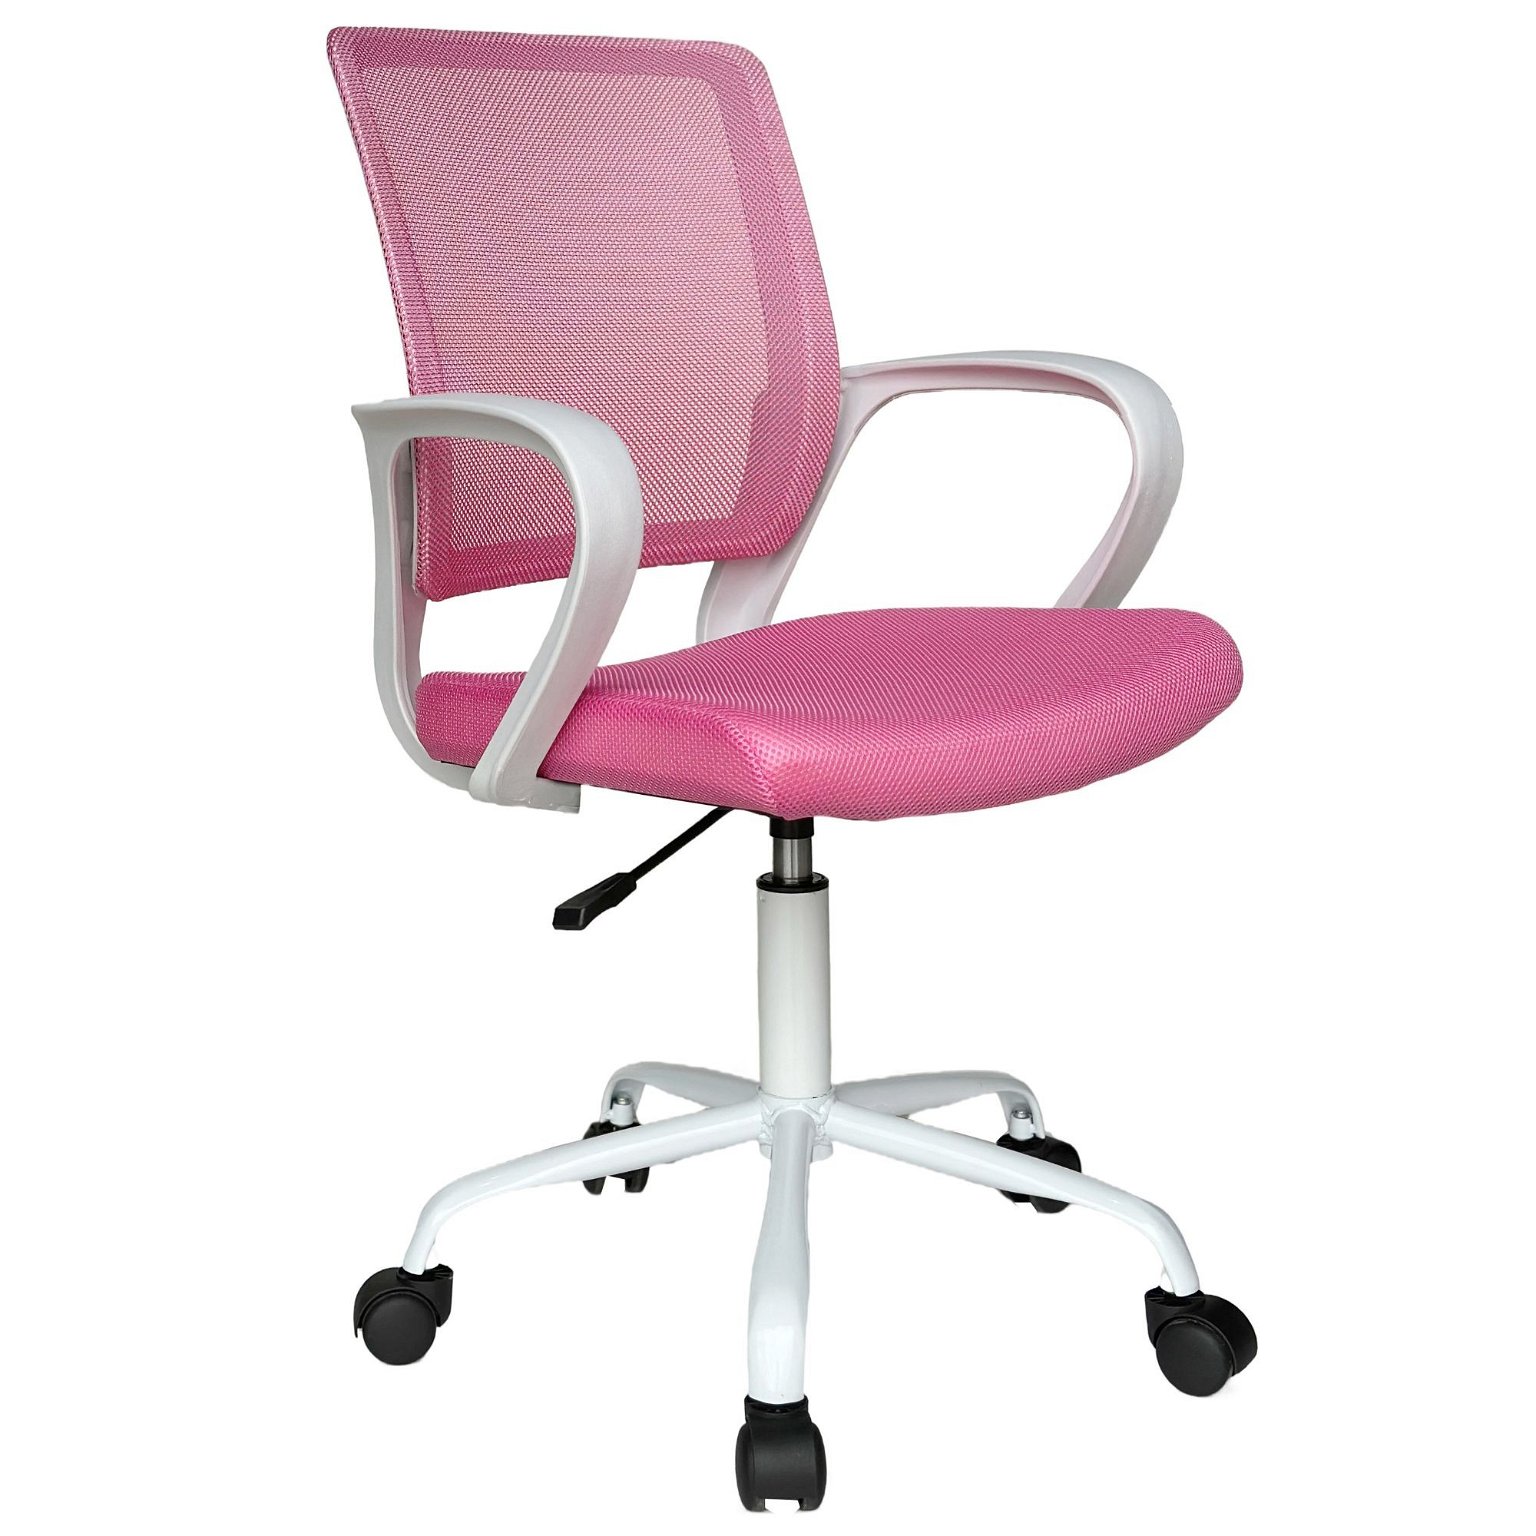 Vaikiška kėdė FD-6, balta/rožinė